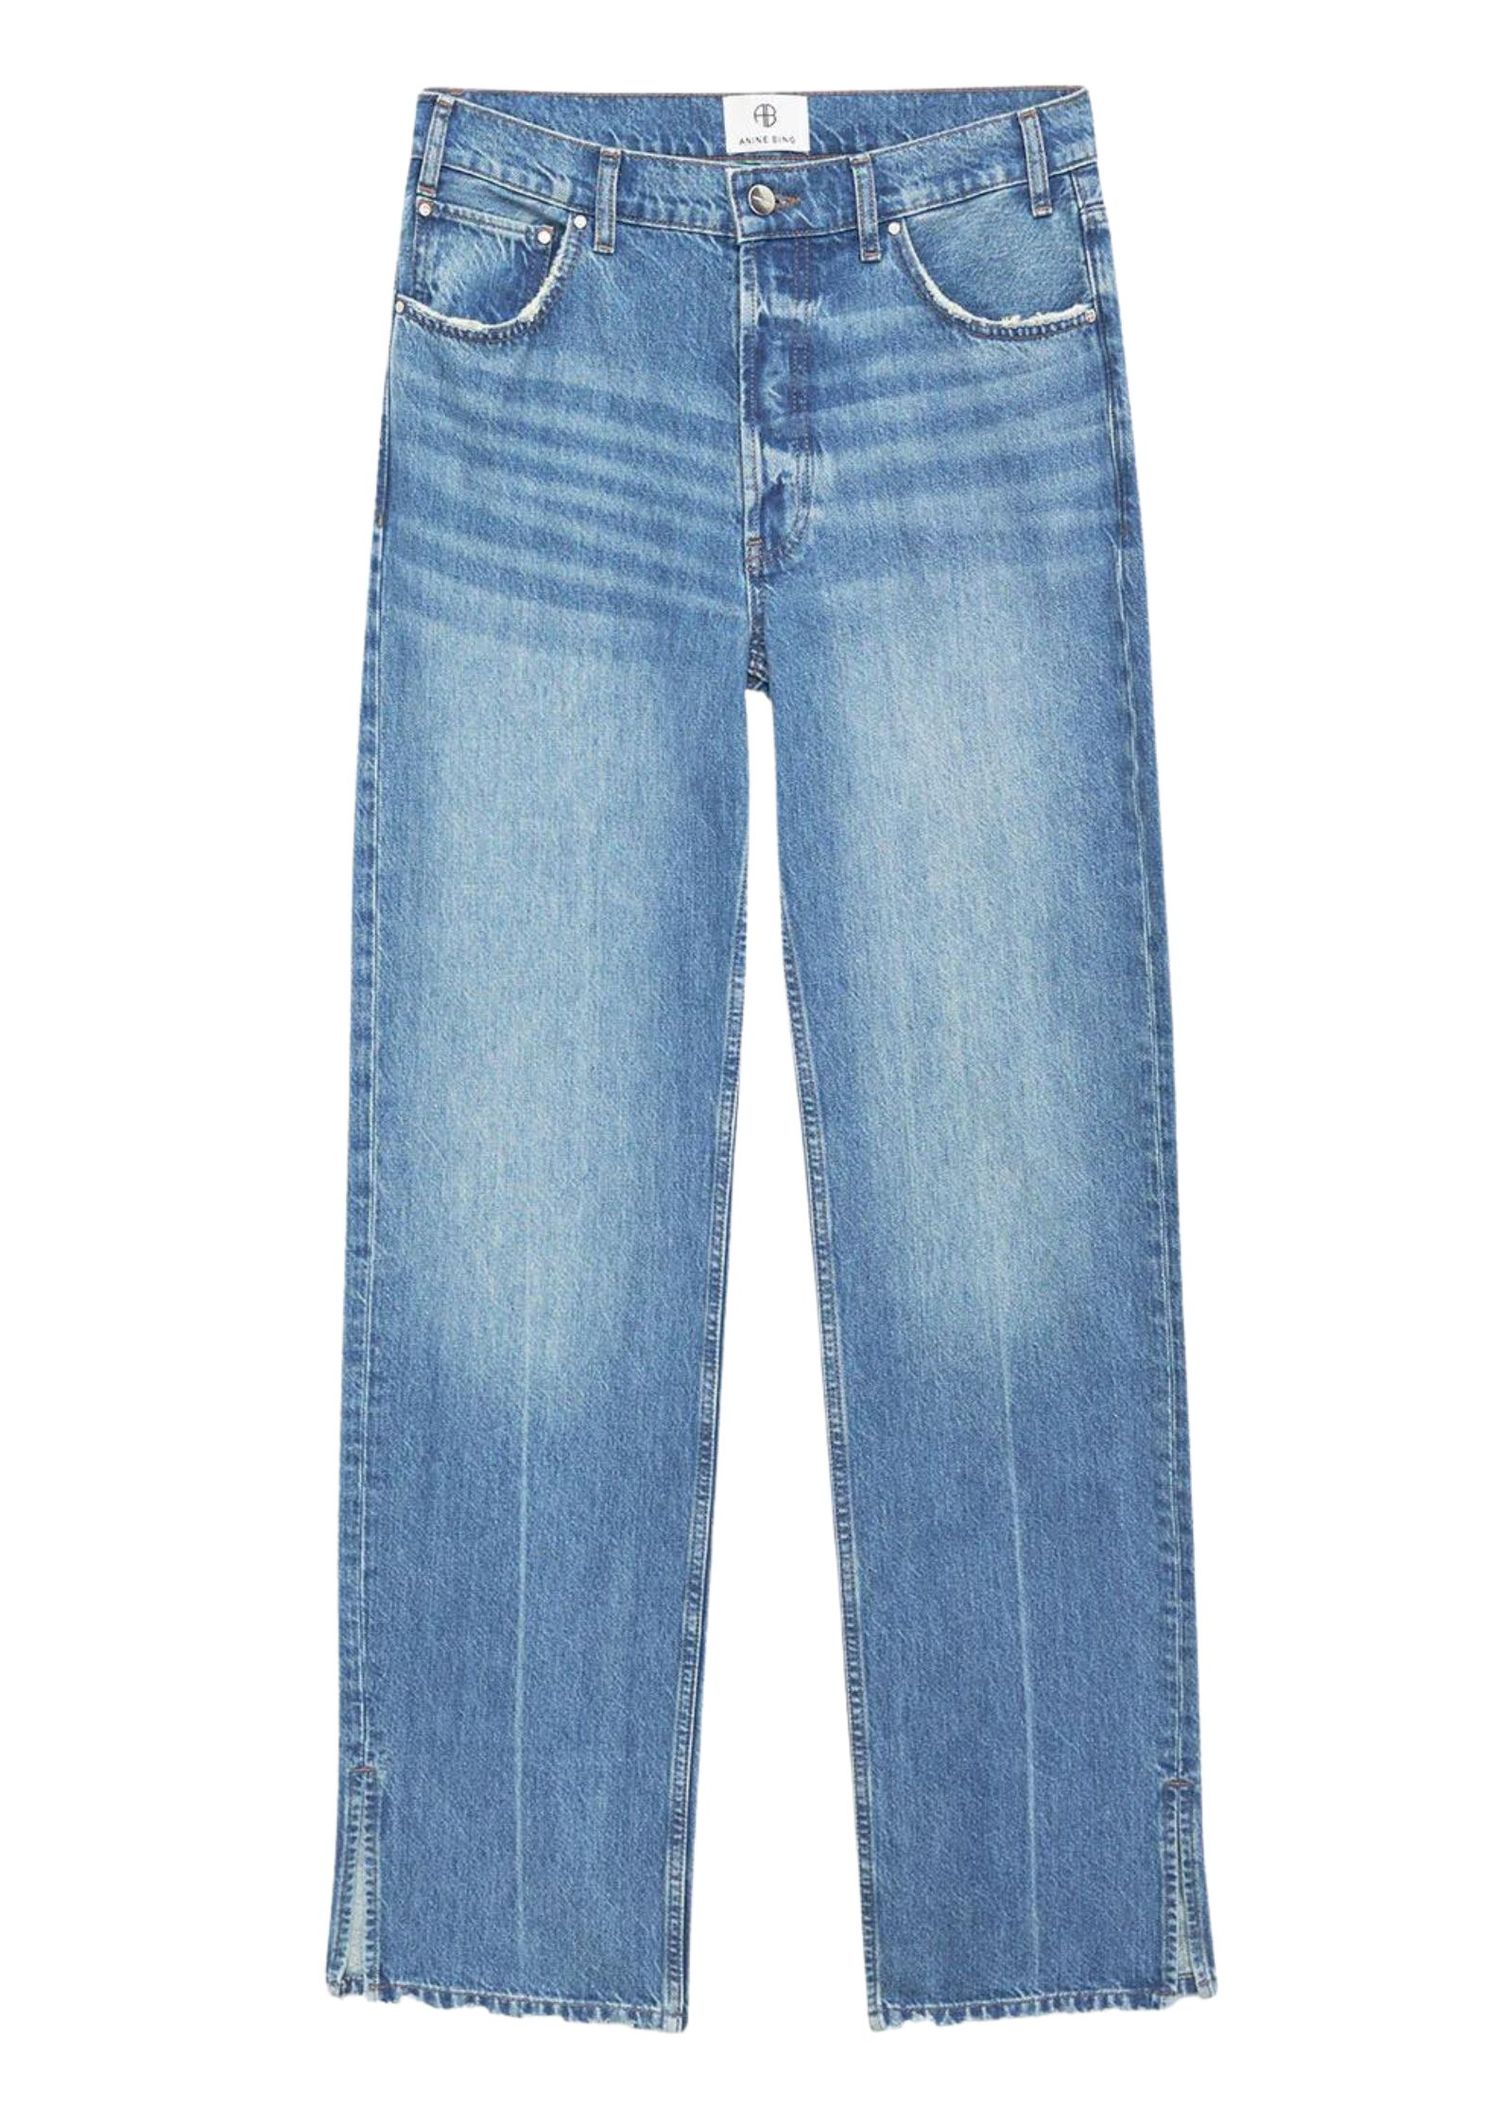 The best jeans from Scandinavian brands in 2023 - Vogue Scandinavia